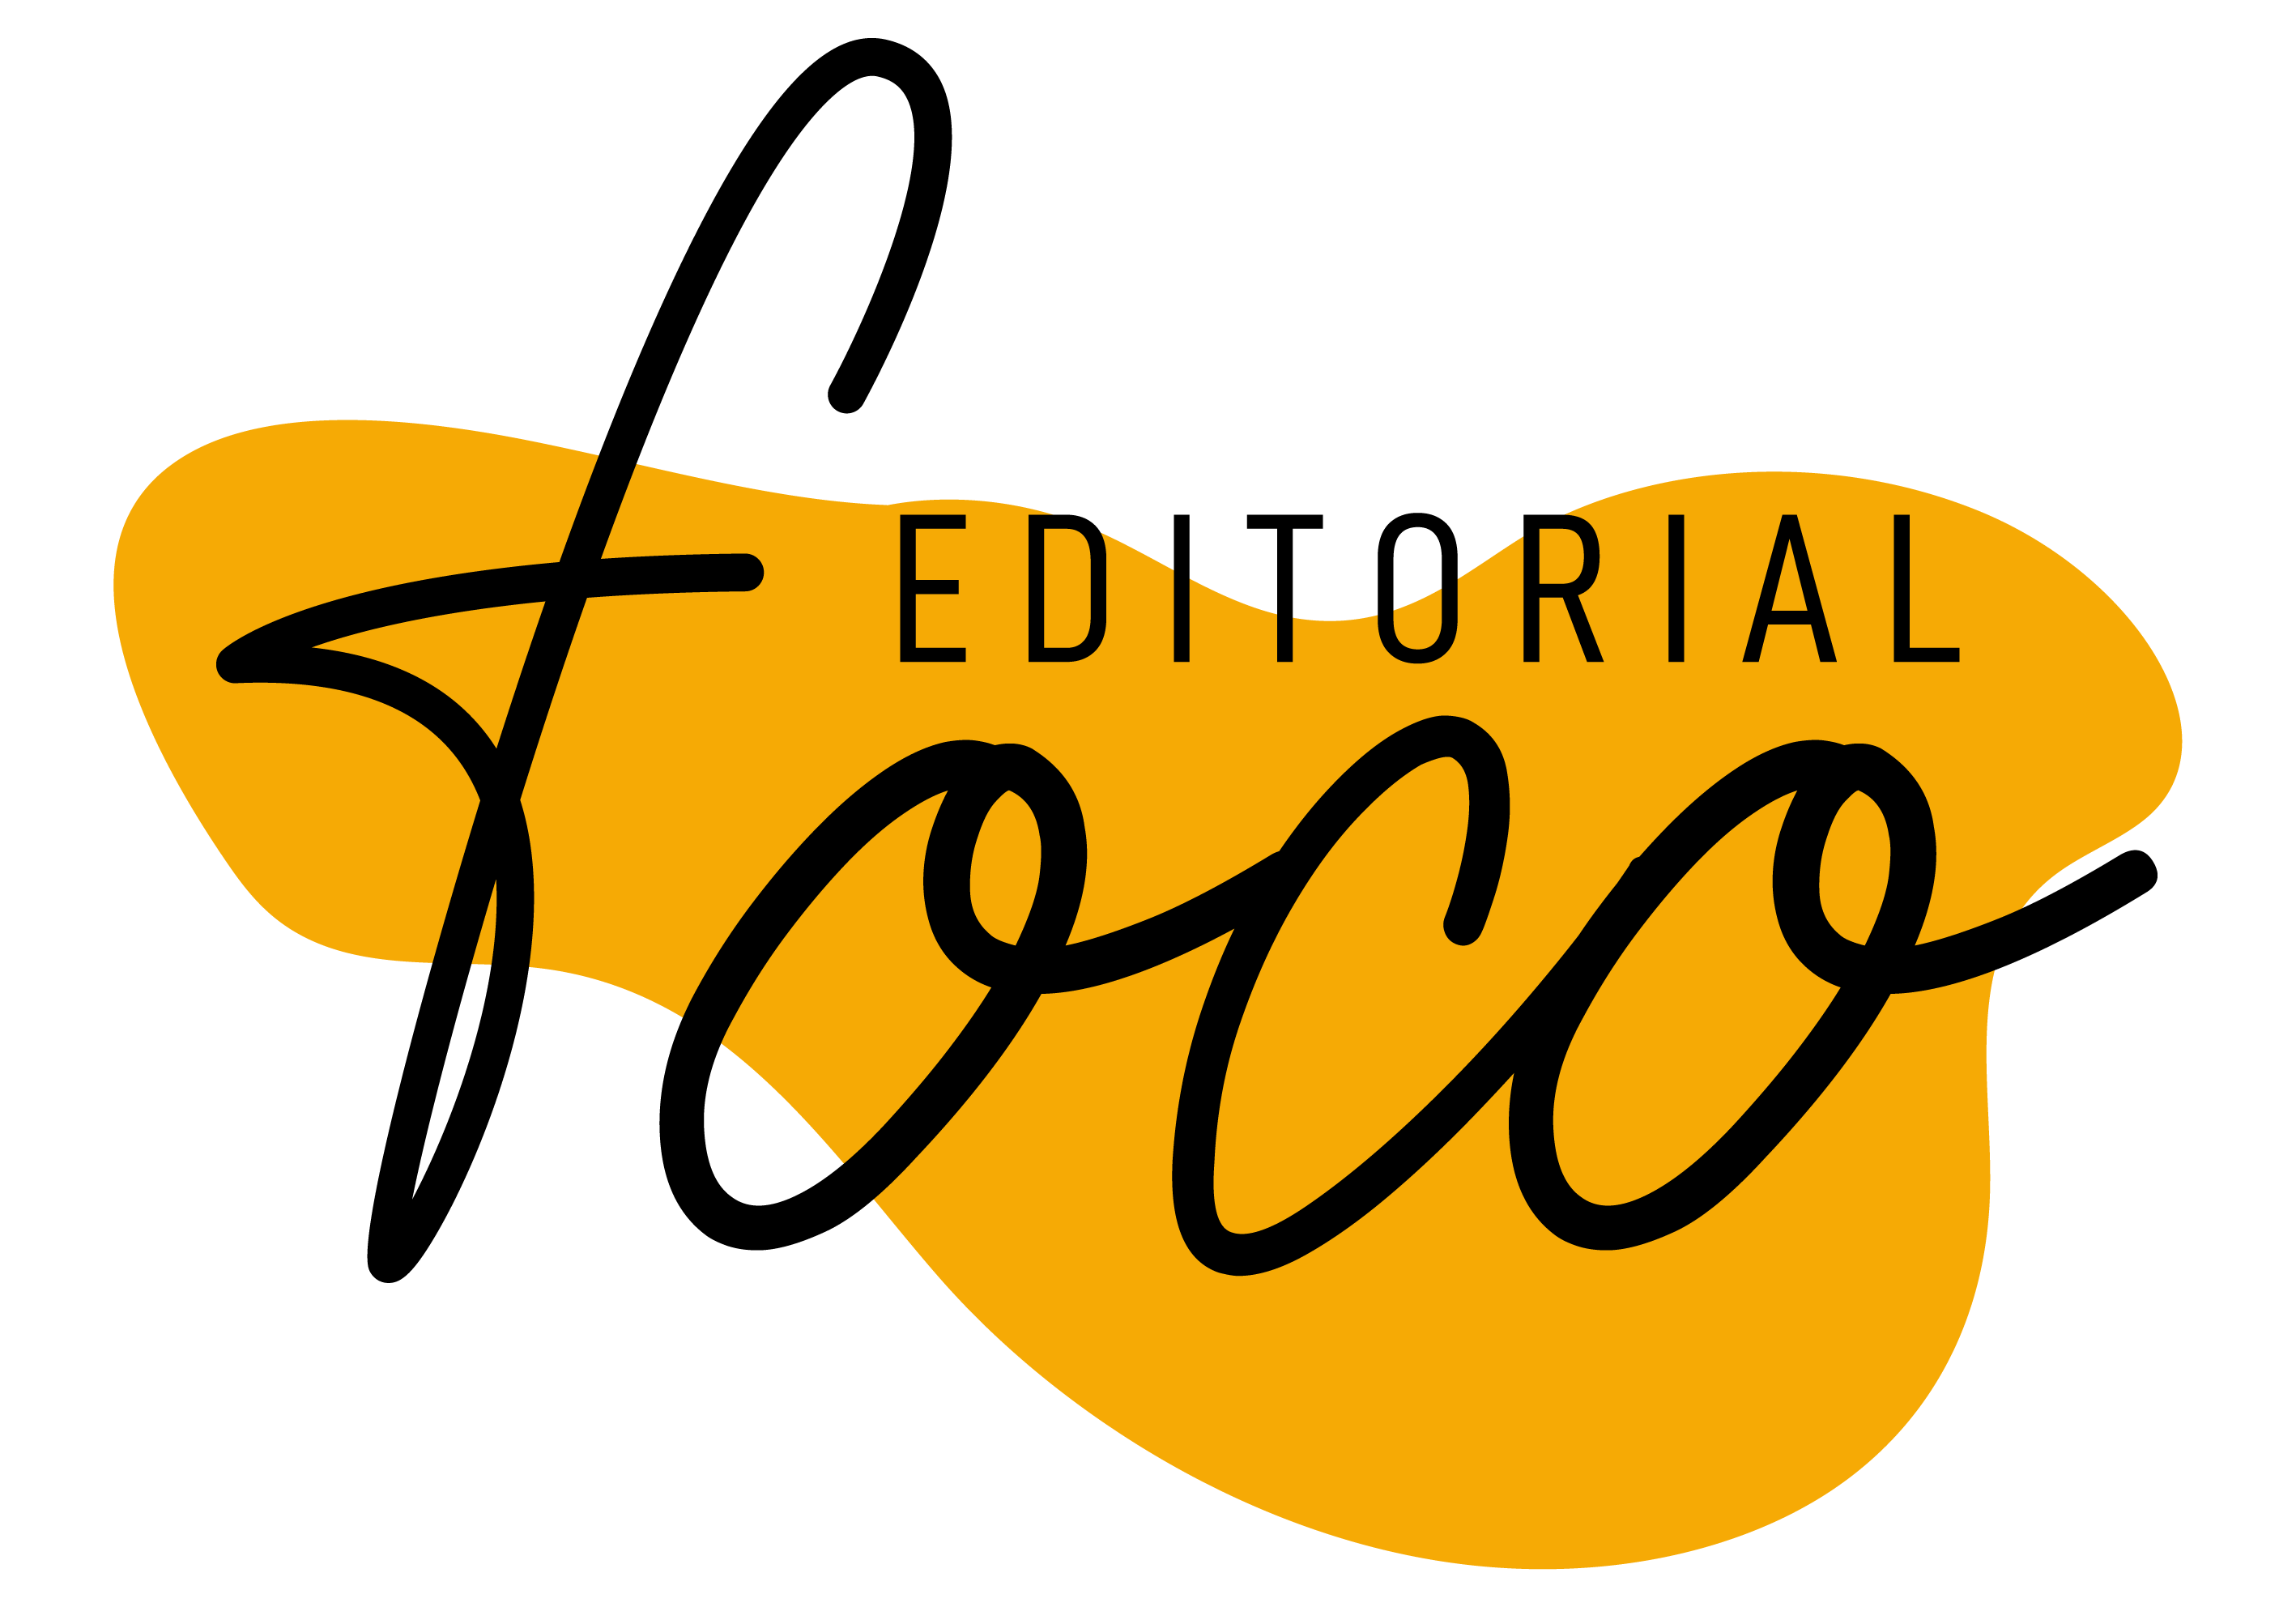 Editorial Foco